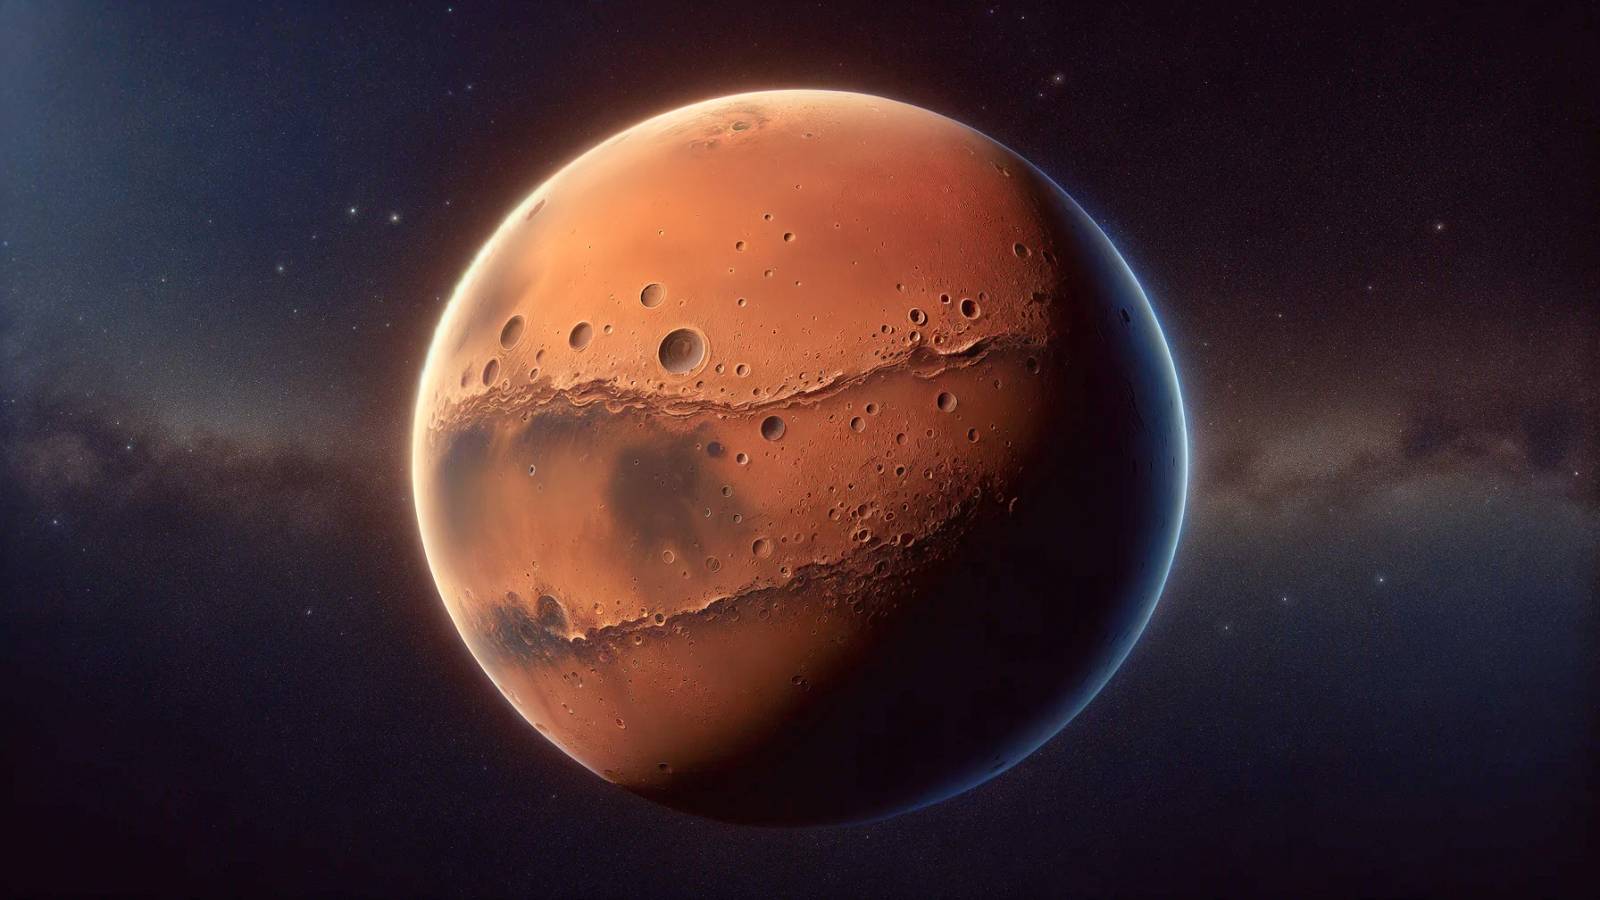 L'ESA annuncia un'incredibile scoperta su Marte grazie alla sonda Mars Express